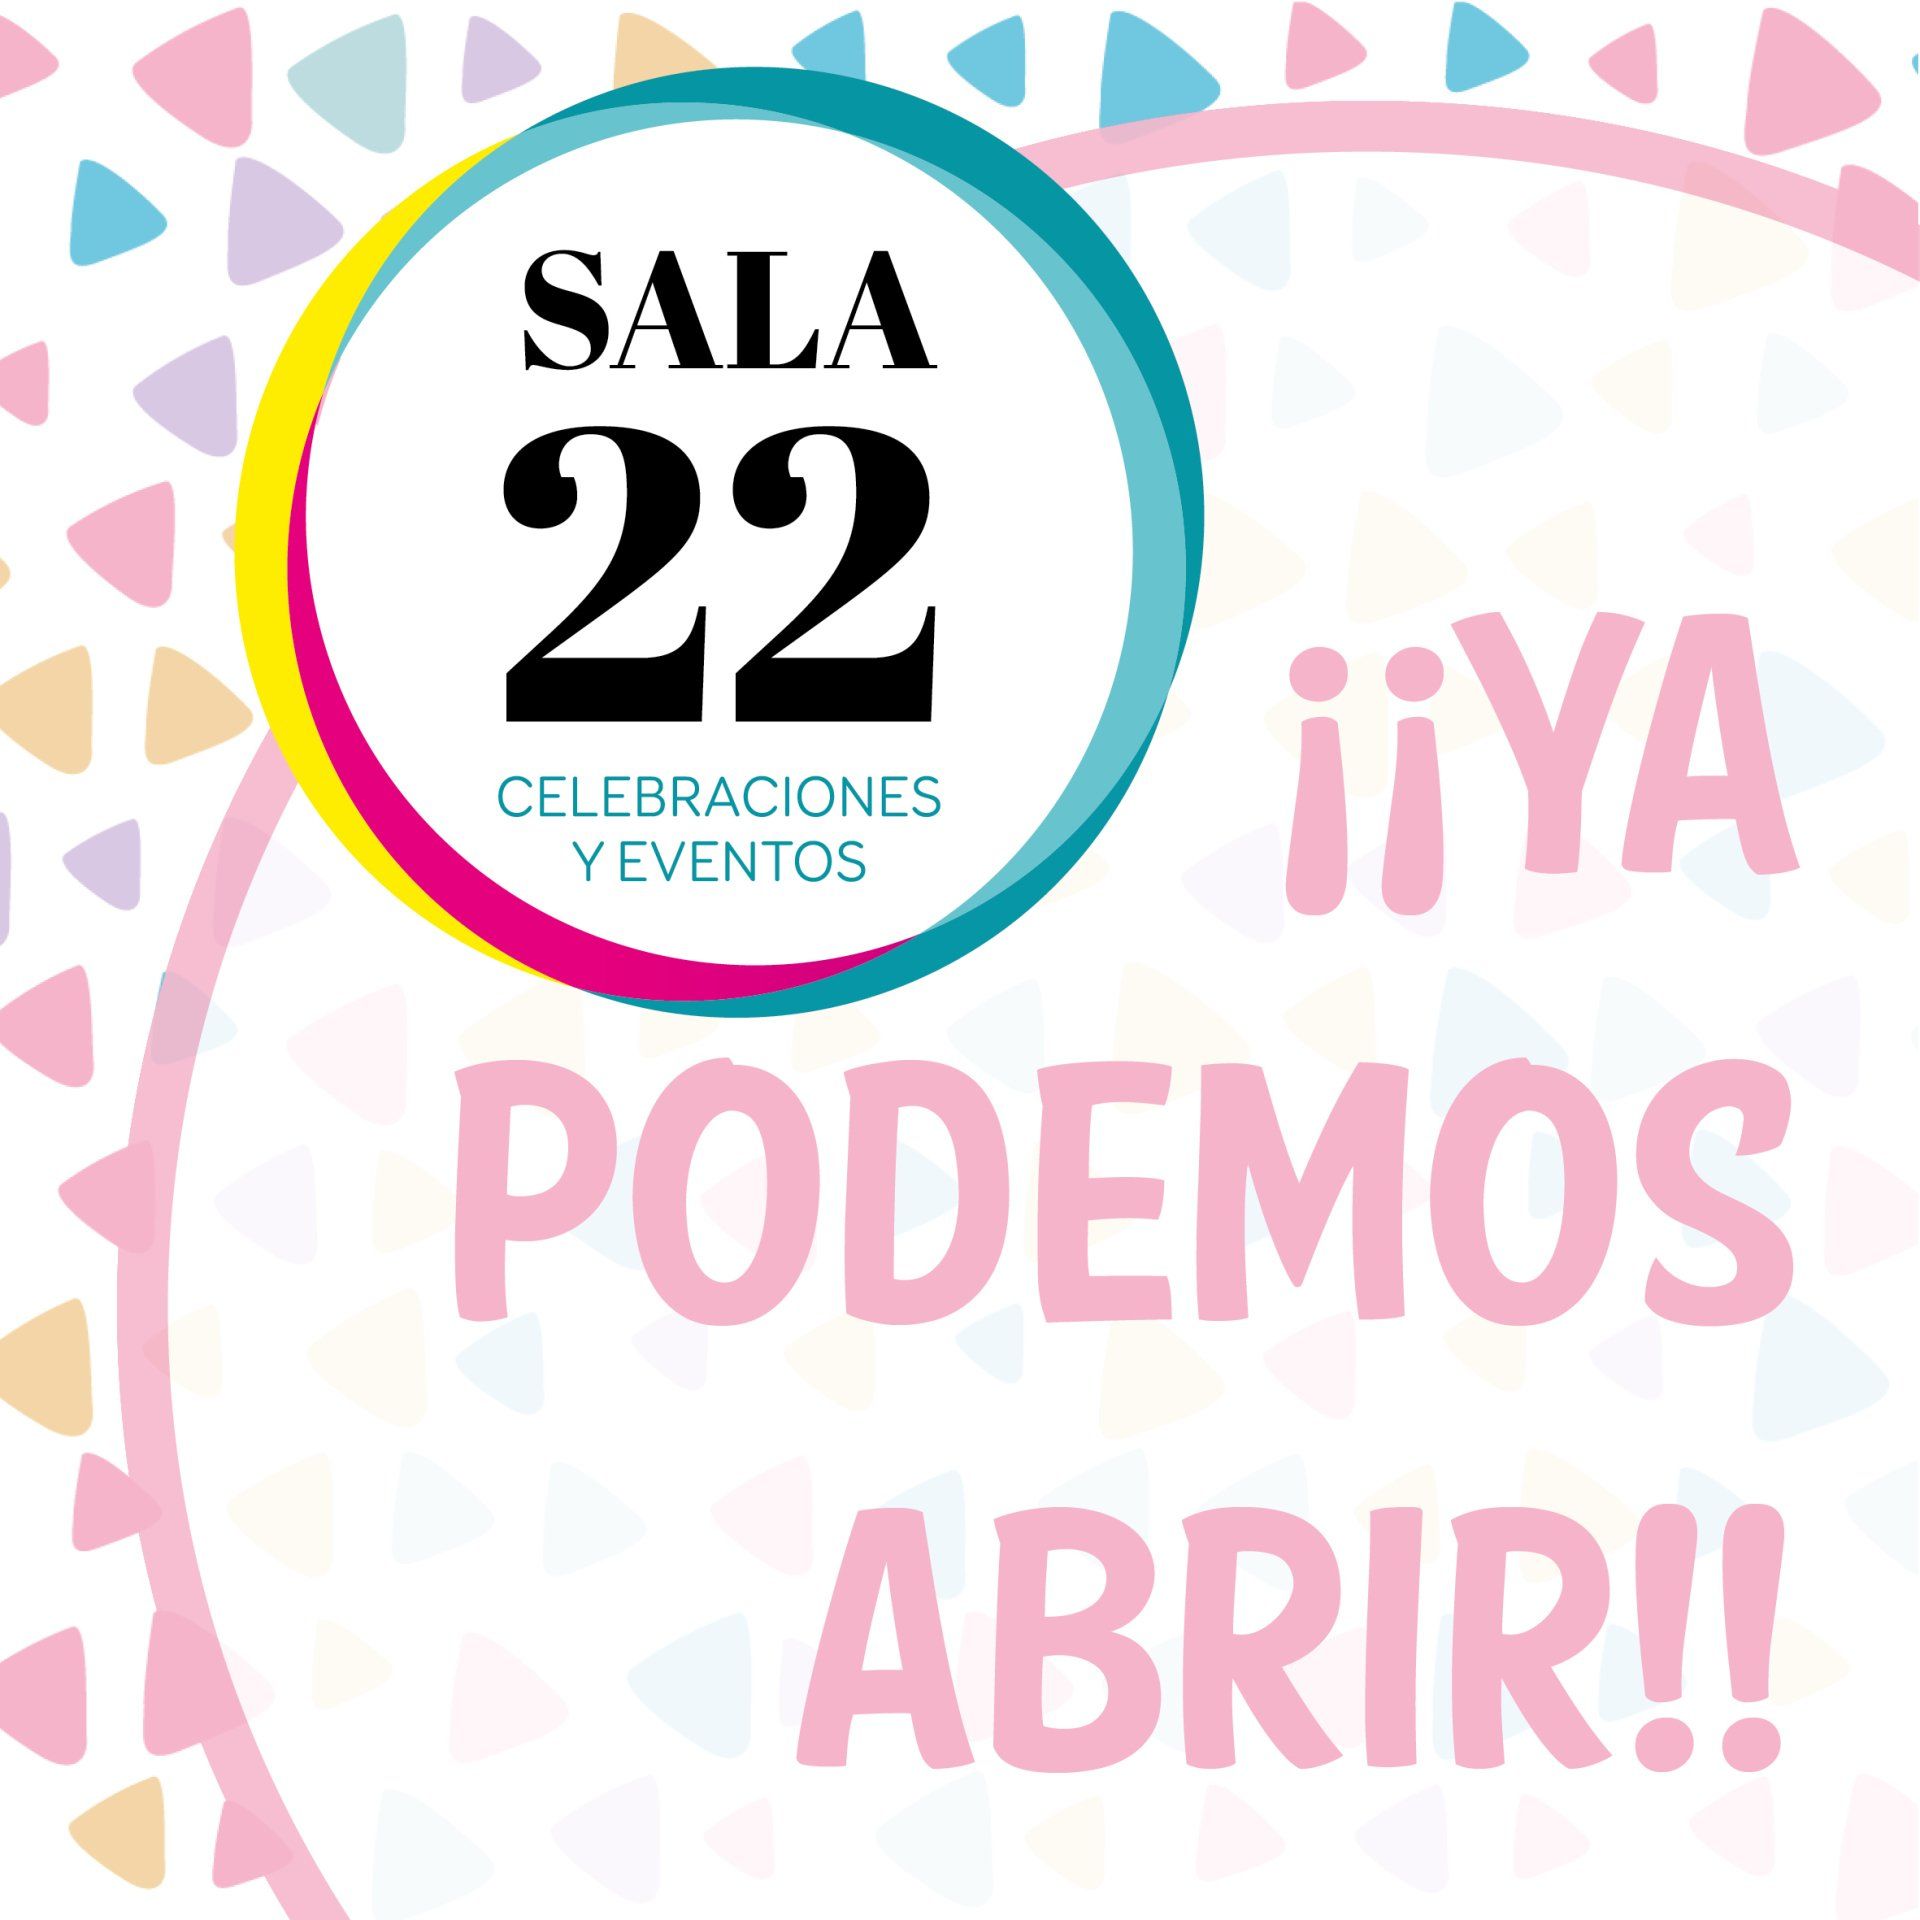 Abrimos de nuevo la Sala 22 celebraciones y eventos de Bonavista - Tarragona